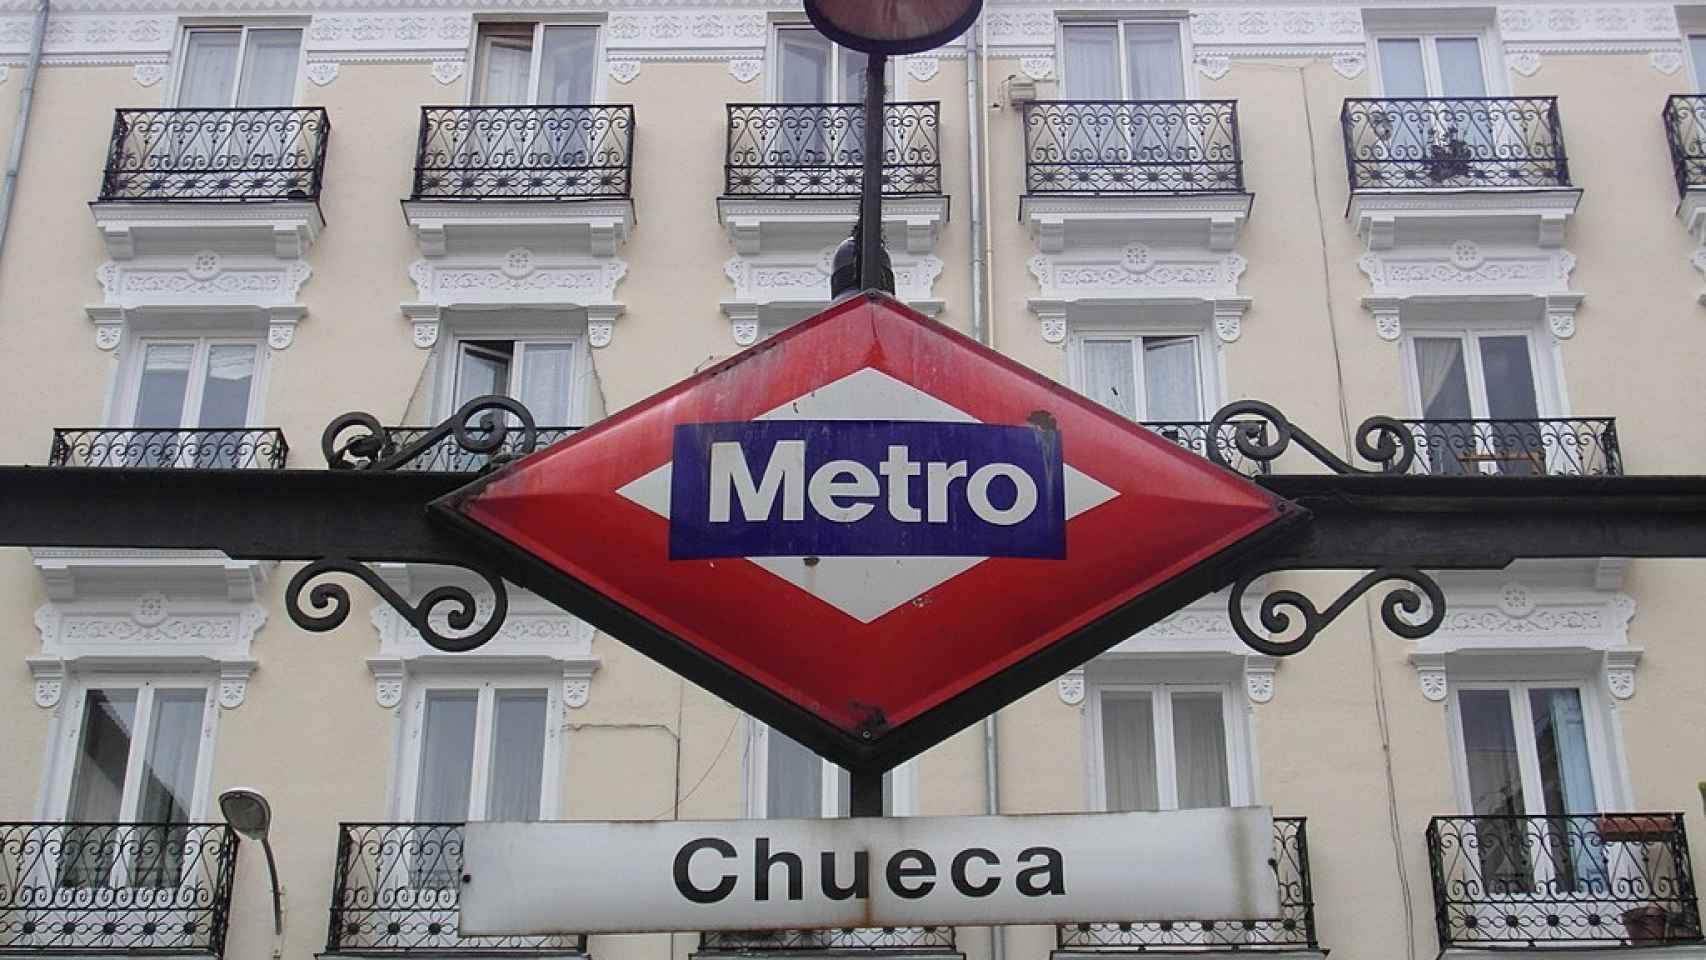 Viviendas en el barrio de Chueca en Madrid.